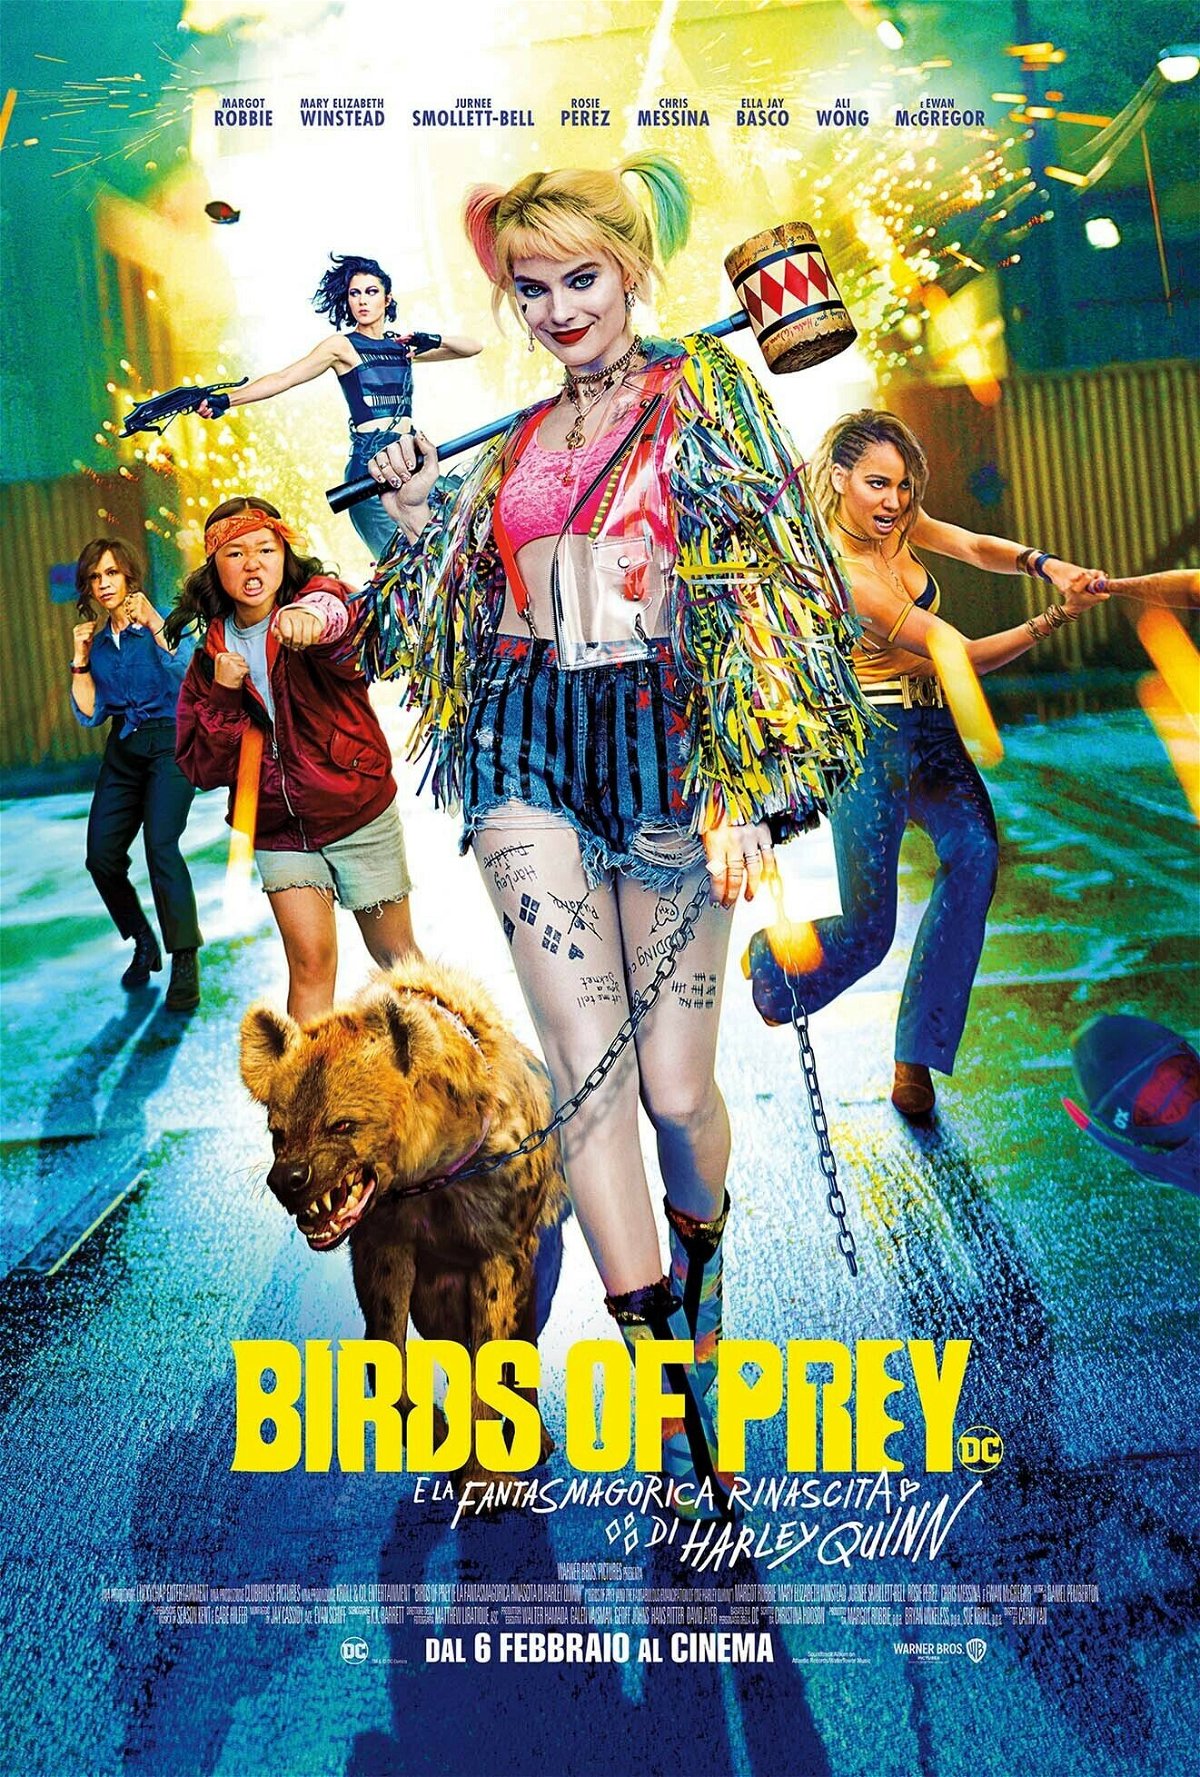 La nuova locandina di Birds of Prey